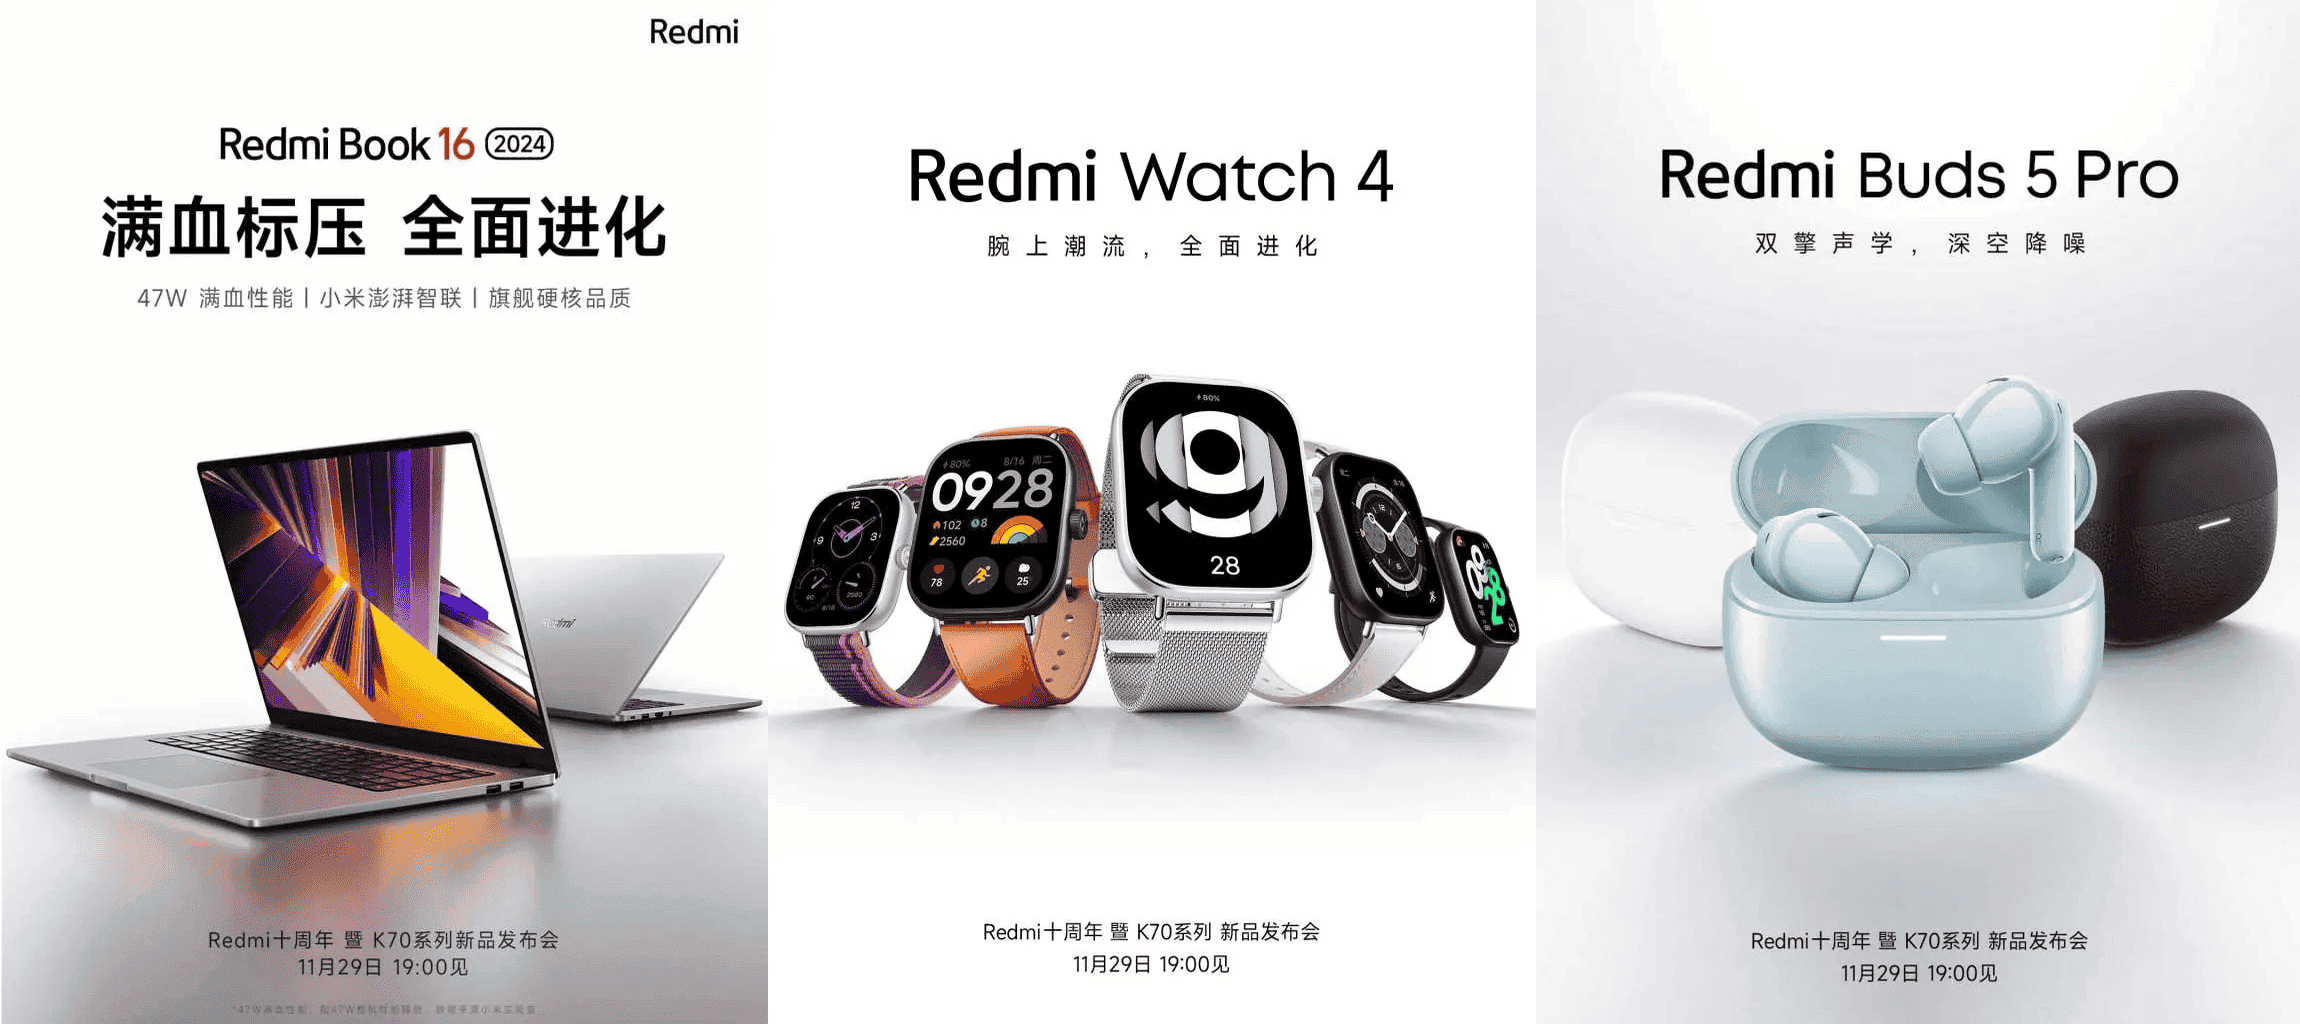 Redmi Watch 4, Redmi Buds 5 and Buds 5 Pro go global